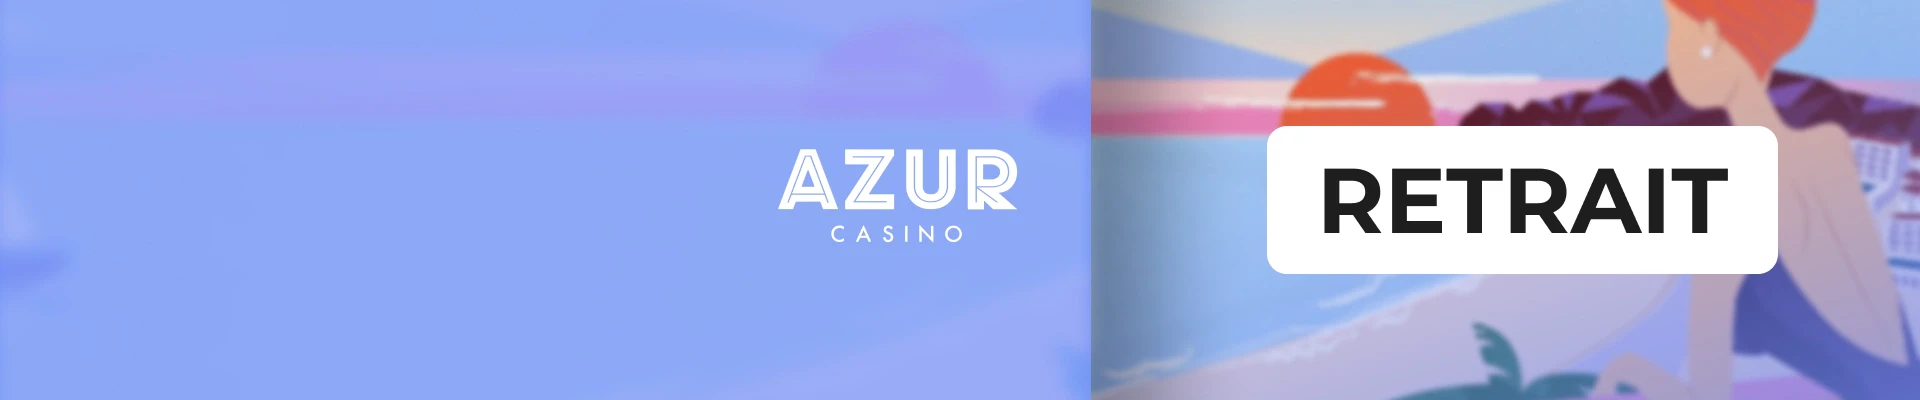 retrait azur casino header